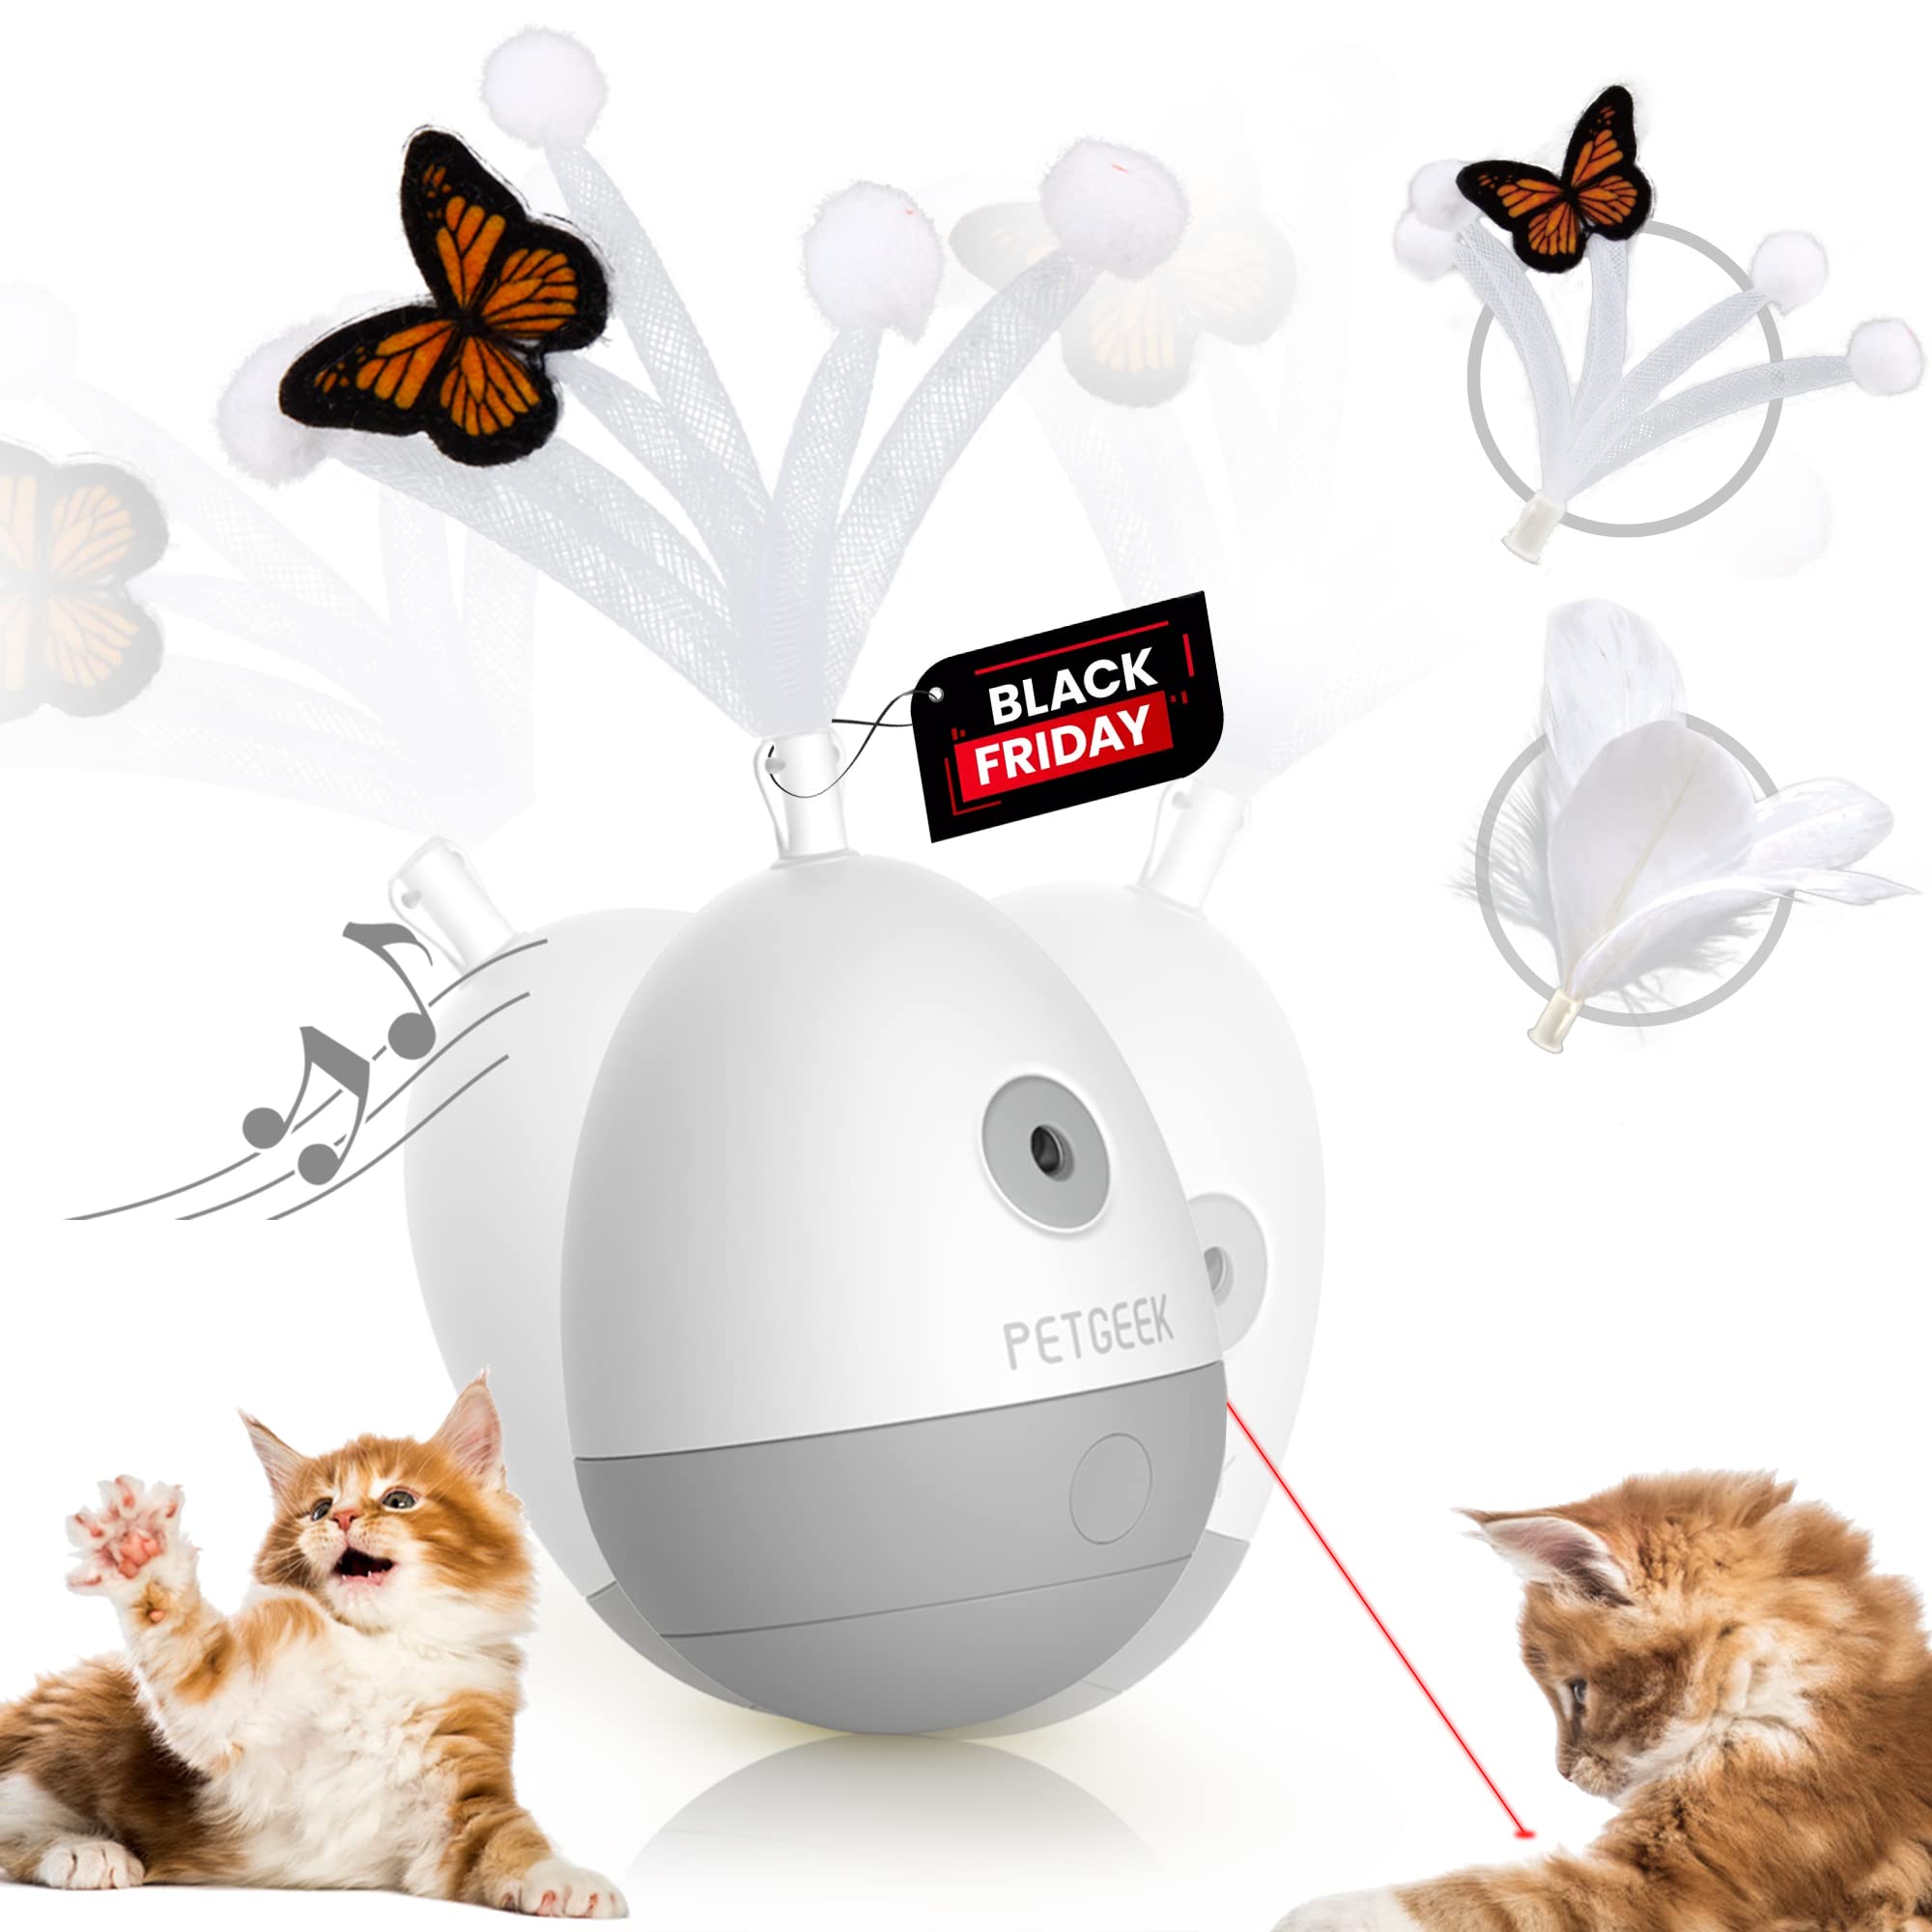 Petgeek Laser Pointer Cat Toy